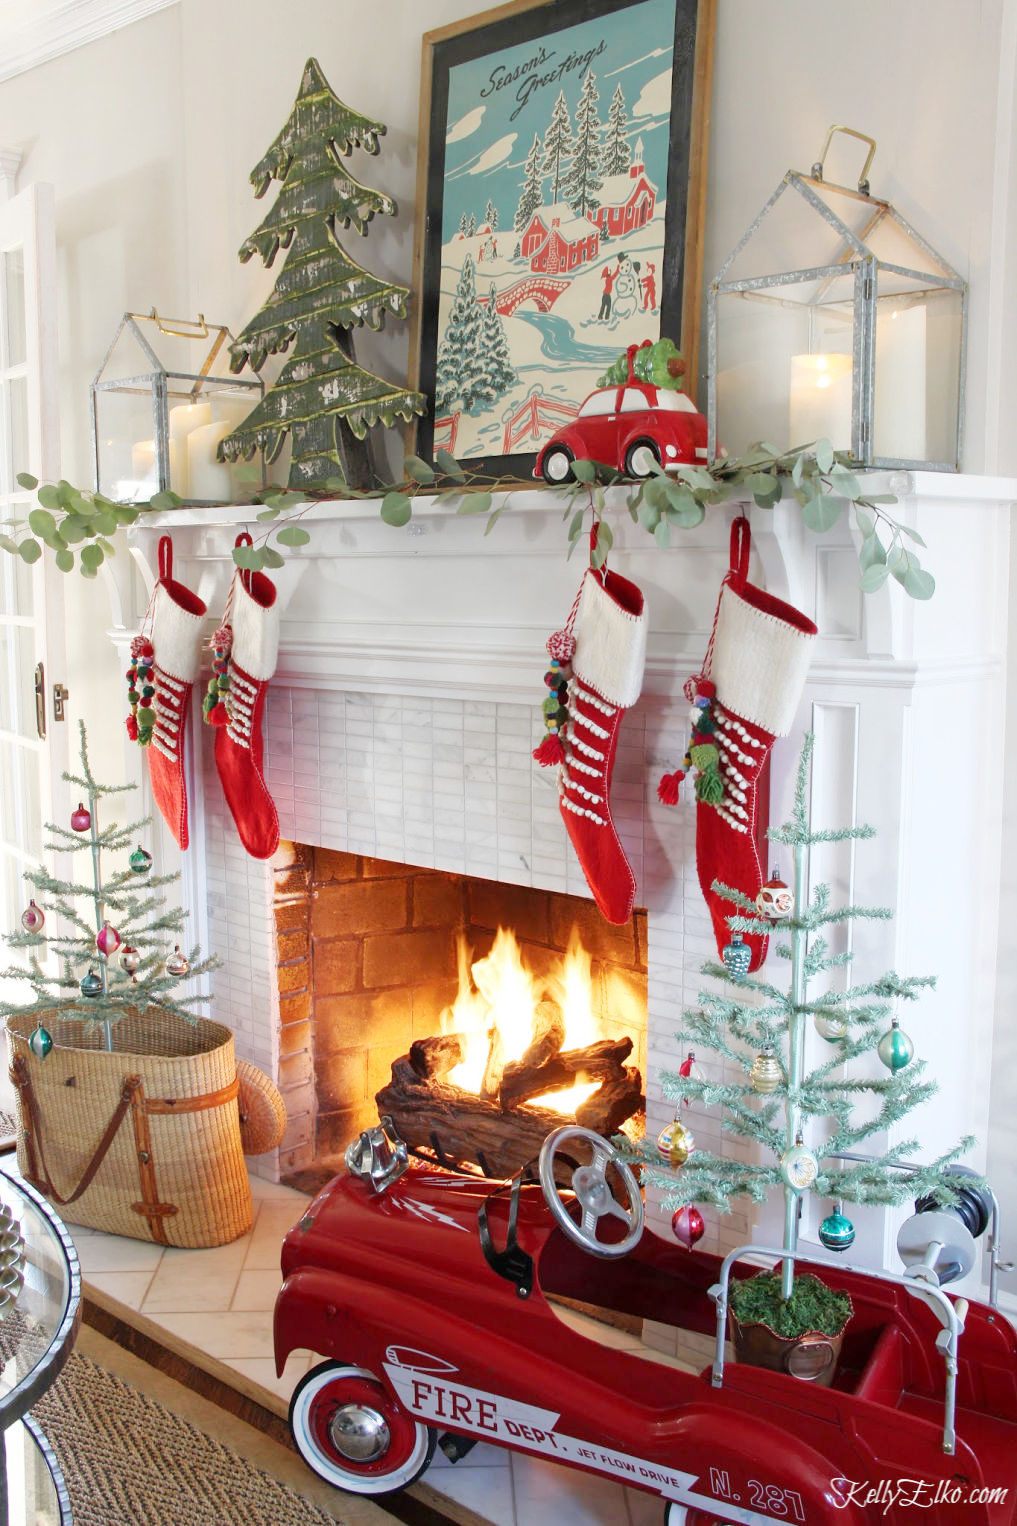 Pom Pom Christmas Trees - DIY Crafts - OkieGirlBling'n'Things